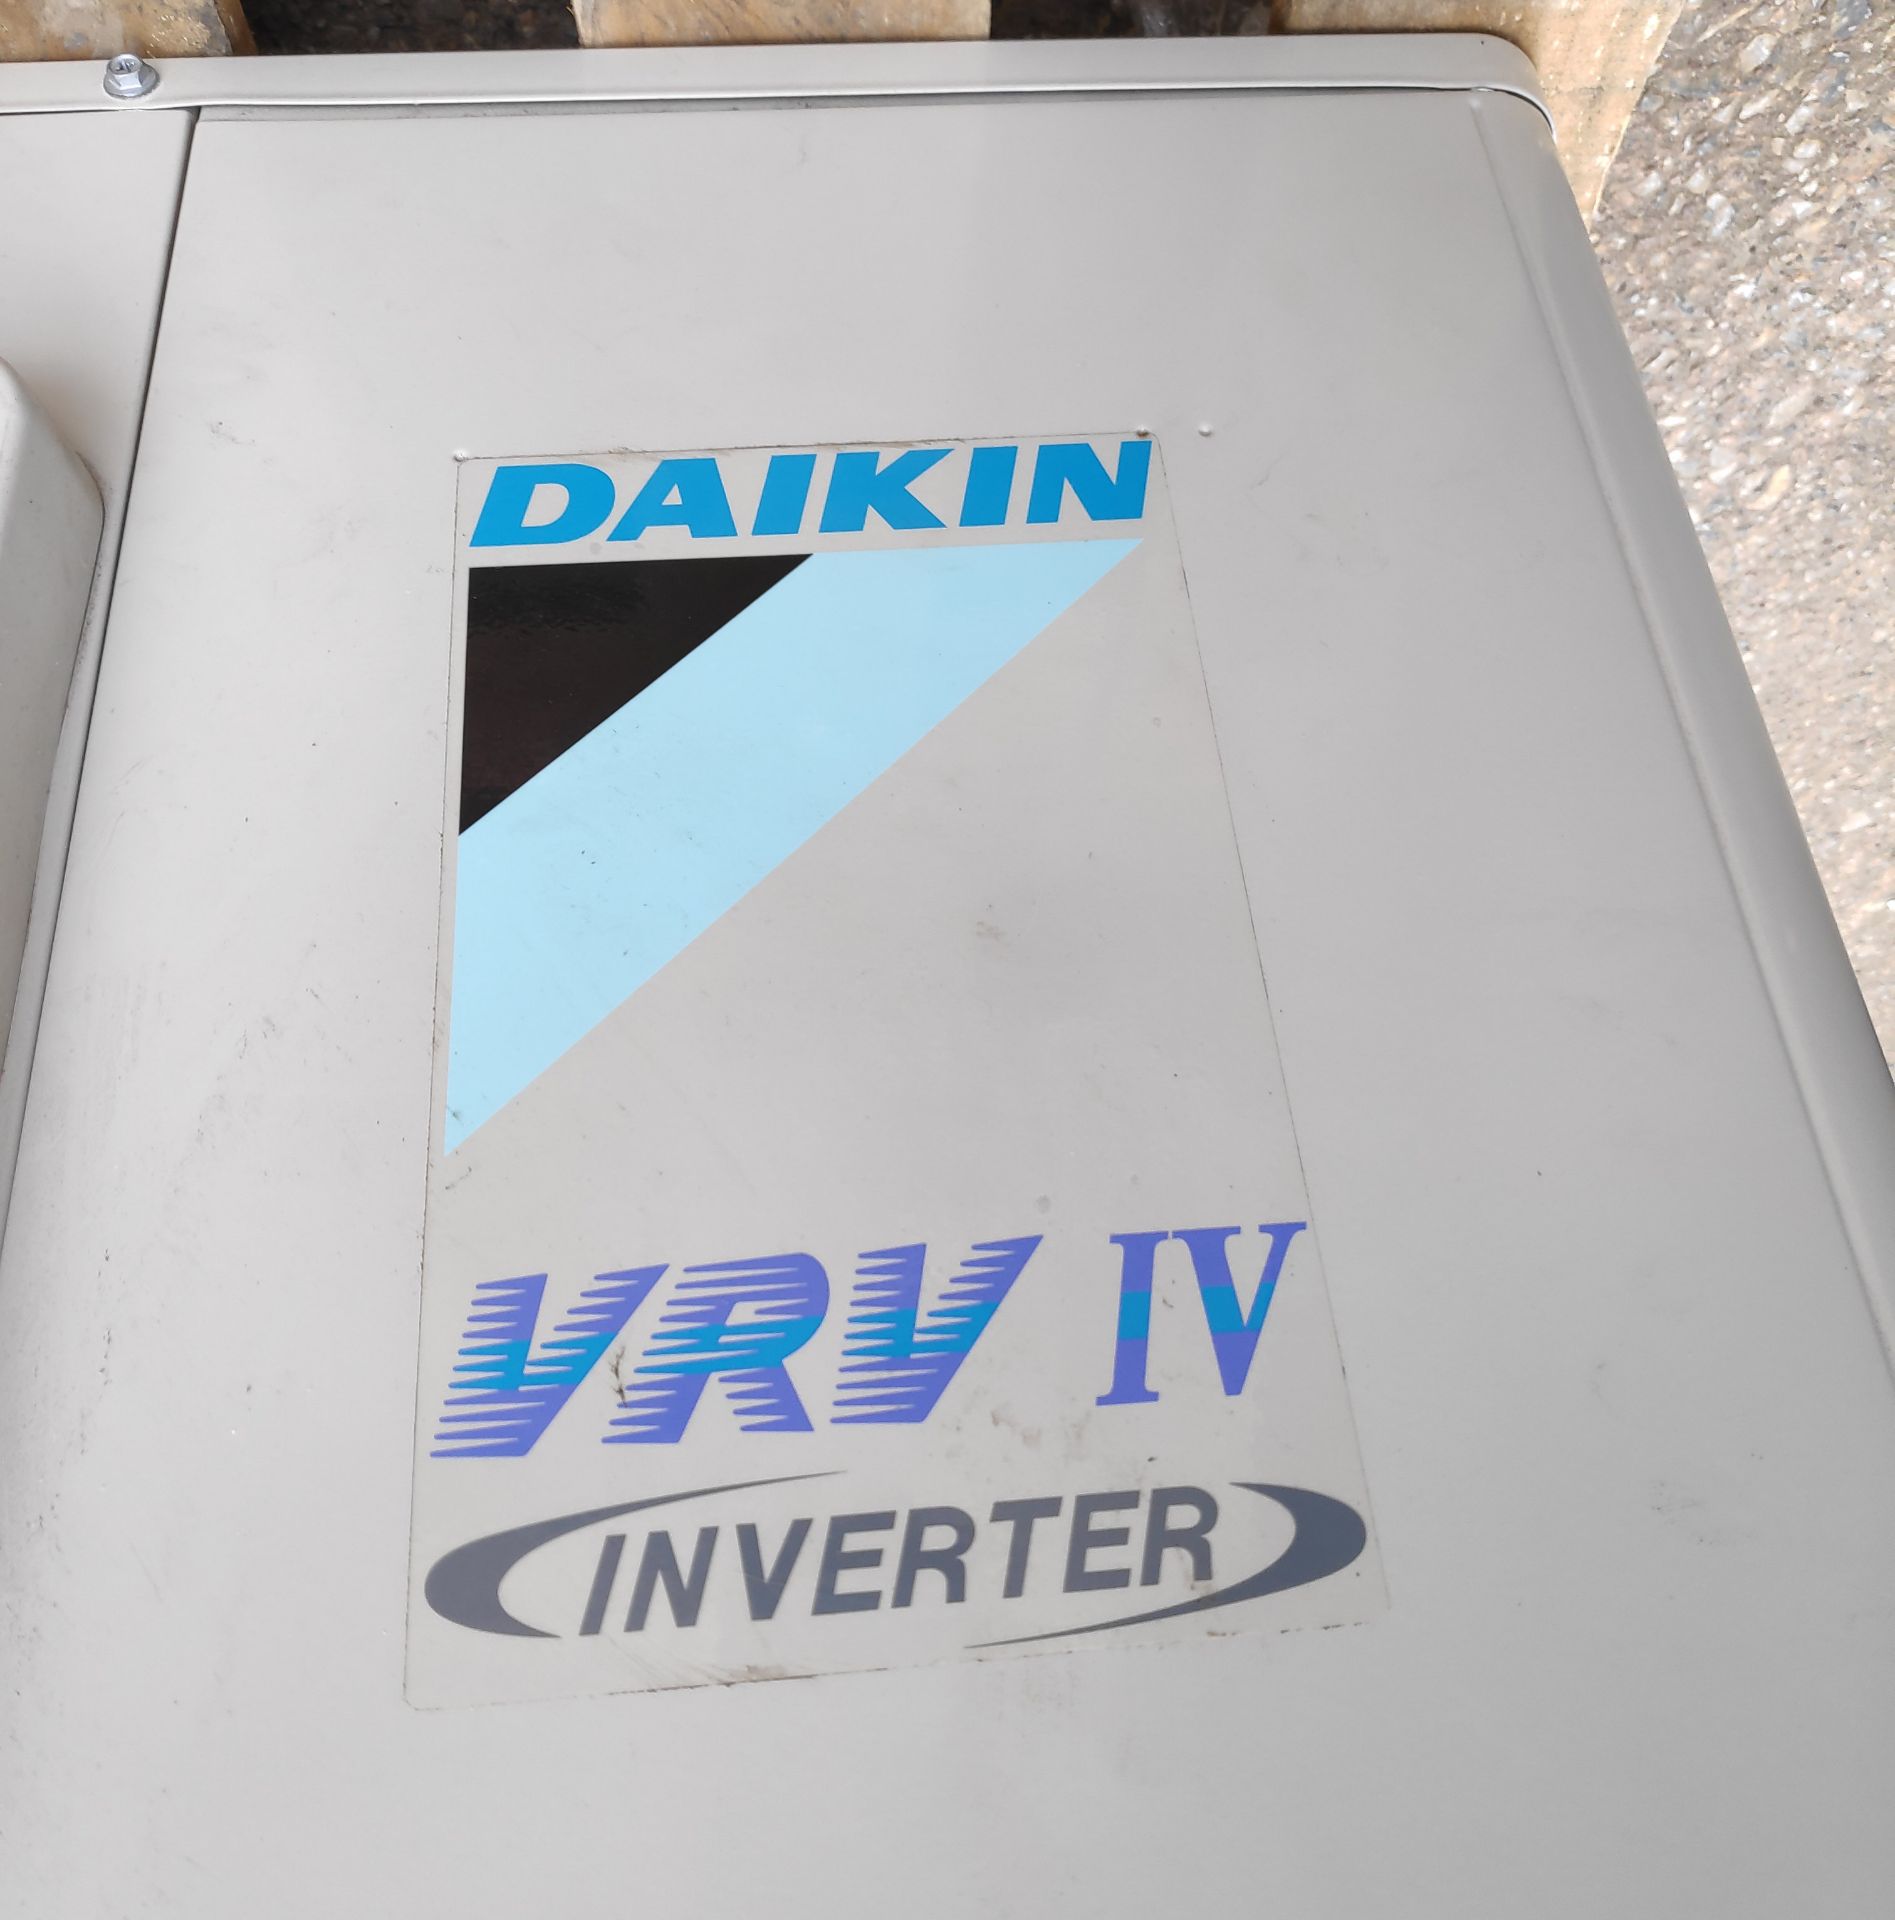 2 x Daikin VRV IV S-Series Air Conditioner Inverter Heat Pumps - Model: RXYSQ5T7V1B - JMCS114 - - Image 3 of 10